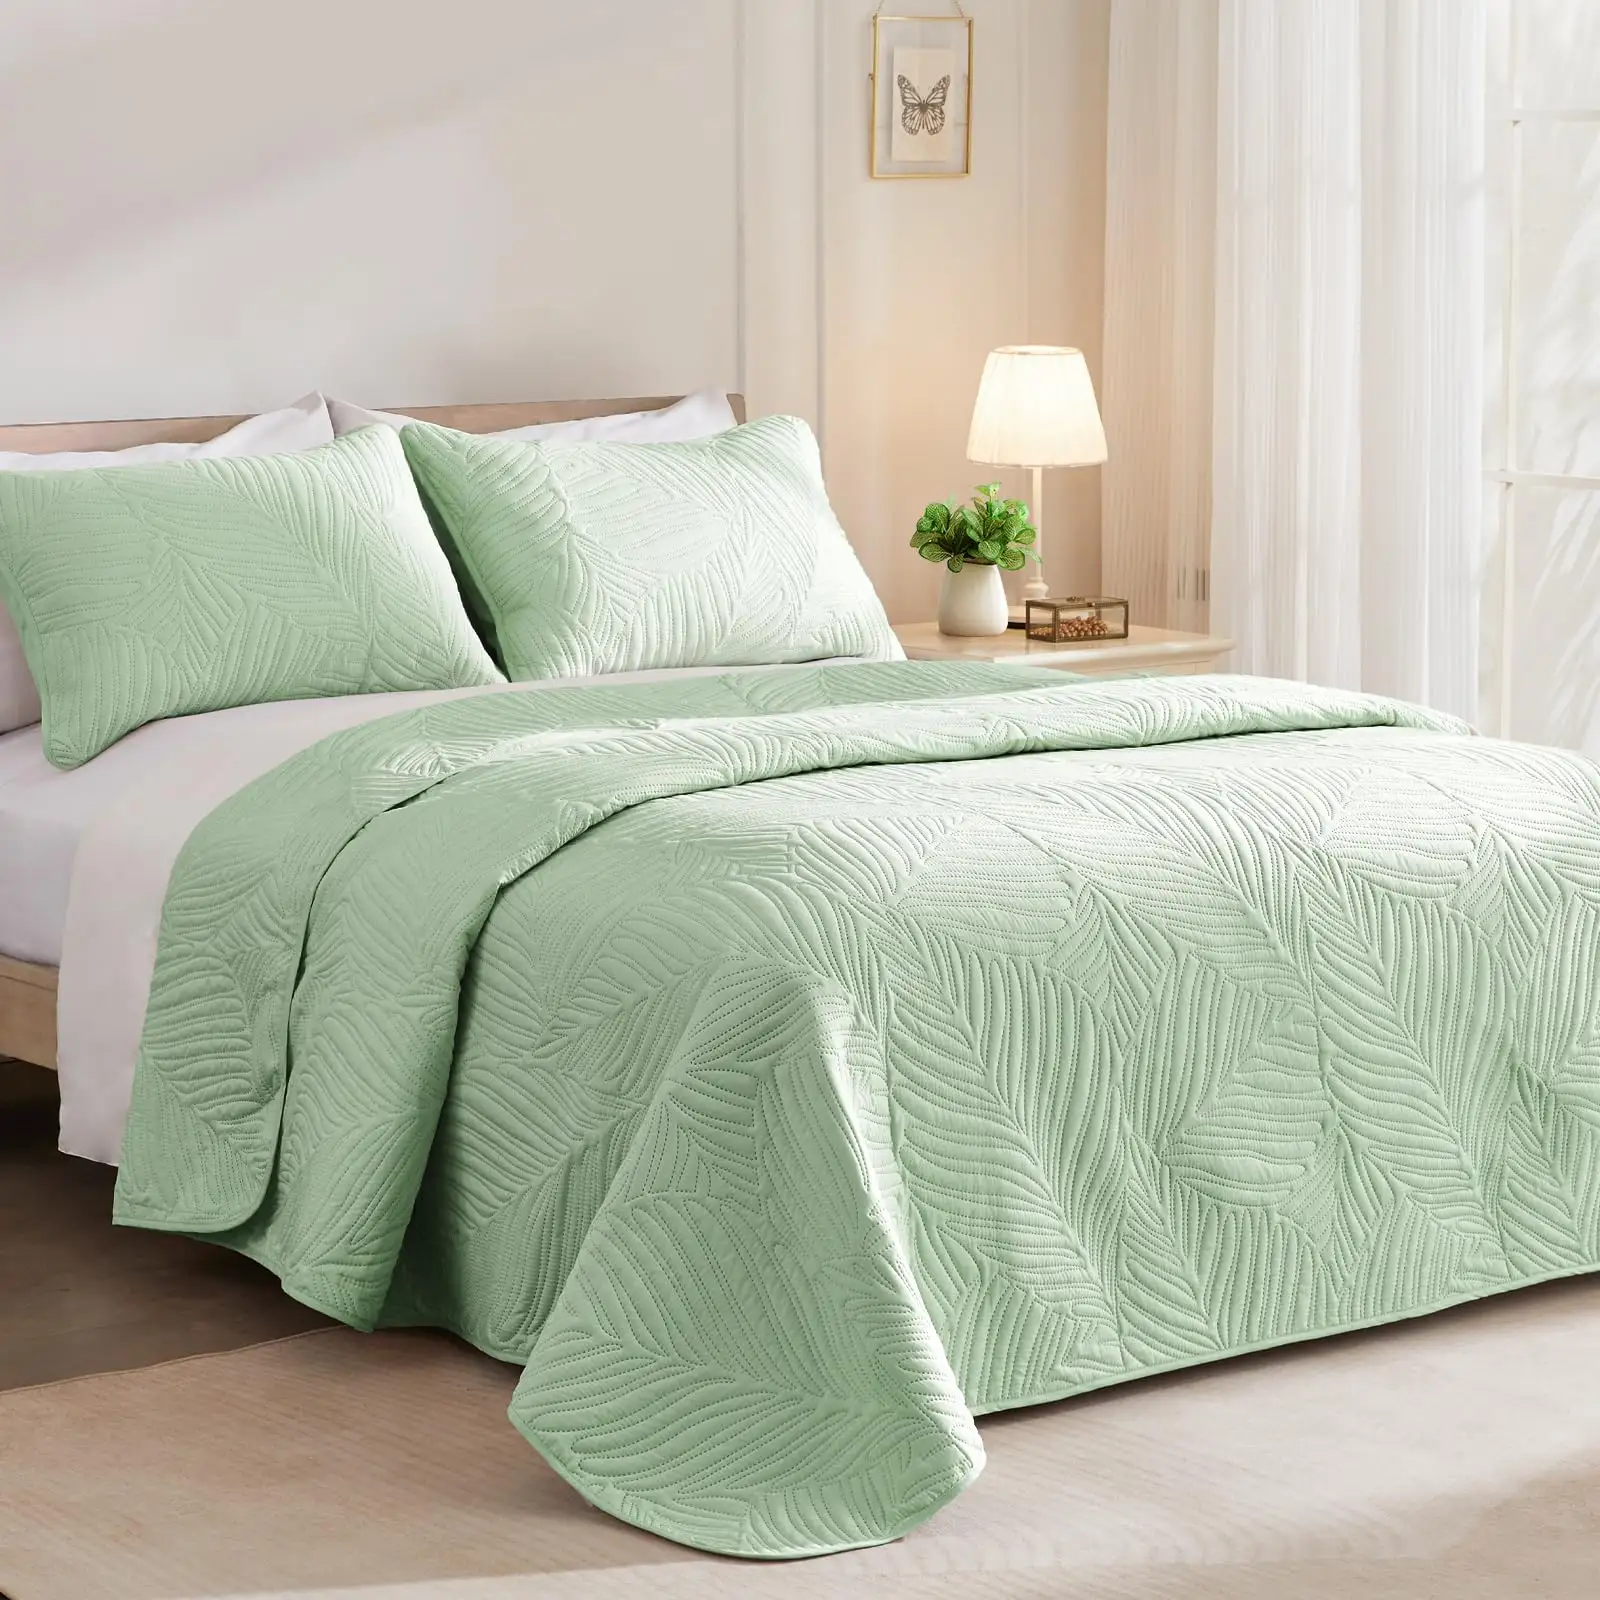 Adaçayı yeşil yumuşak hafif mikrofiber yatak örtüleri battaniyeler yatak örtüsü yorgan yatak takımı yaprak desen ile her mevsim için